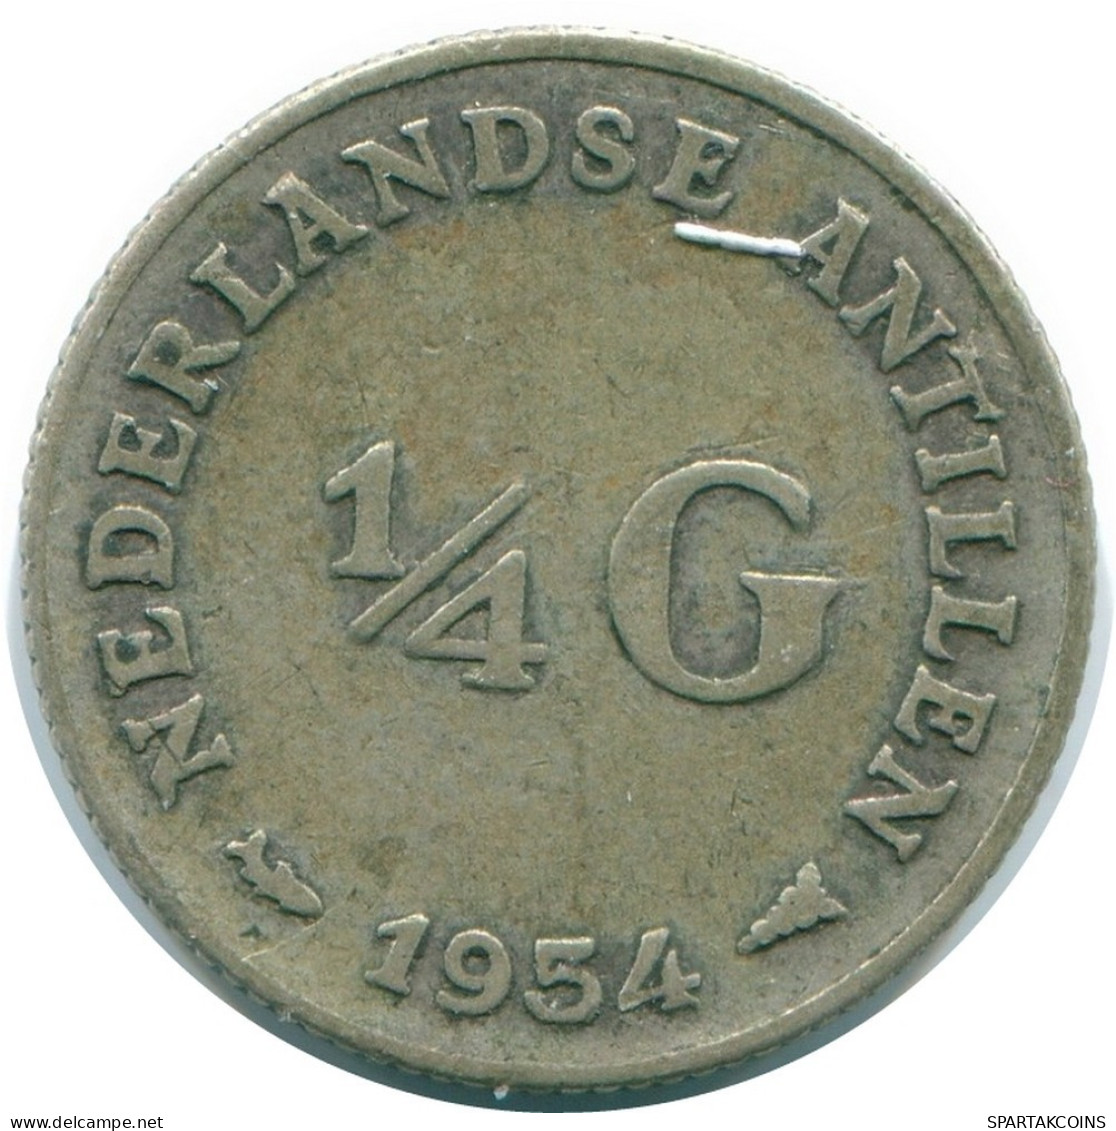 1/4 GULDEN 1954 NIEDERLÄNDISCHE ANTILLEN SILBER Koloniale Münze #NL10878.4.D.A - Niederländische Antillen